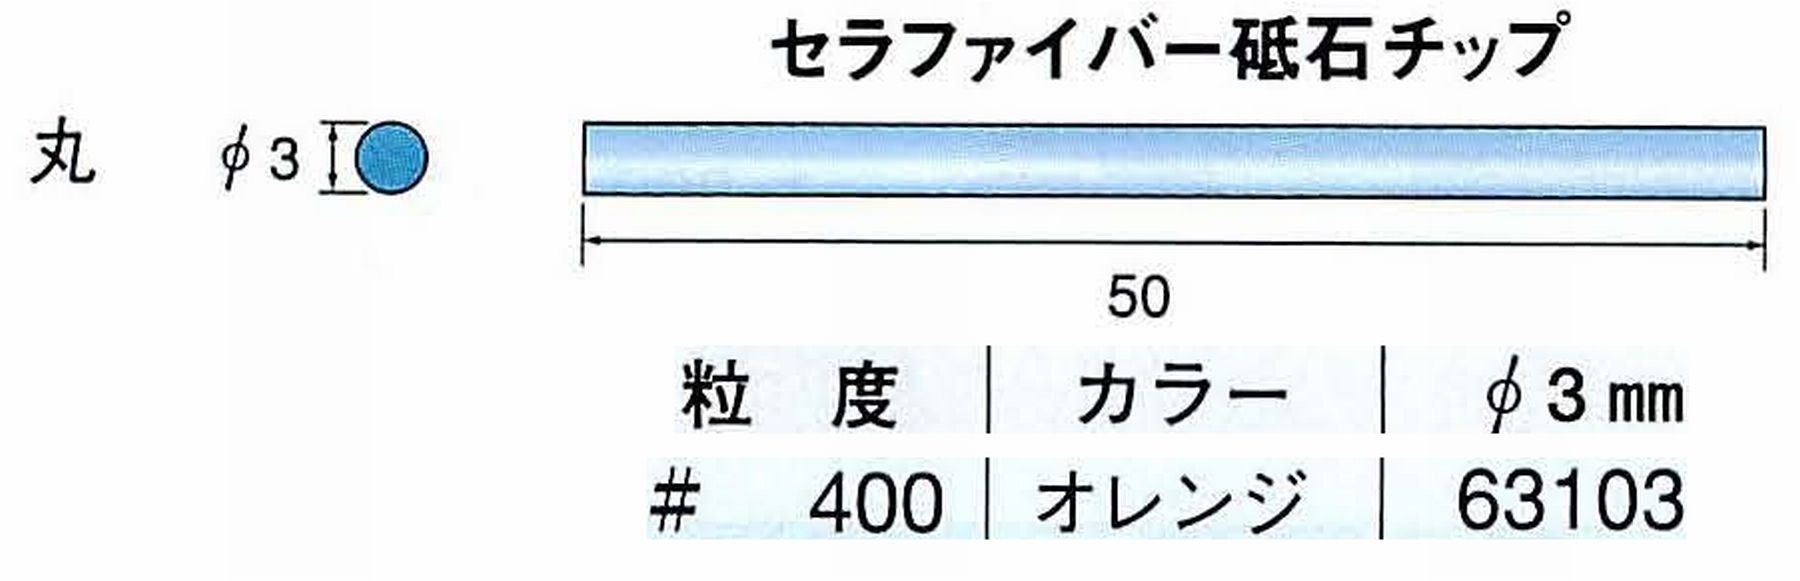 ナカニシ/NAKANISHI 超音波研磨装置 シーナスneo/シーナス専用工具 セラファイバー砥石チップ 丸 63103